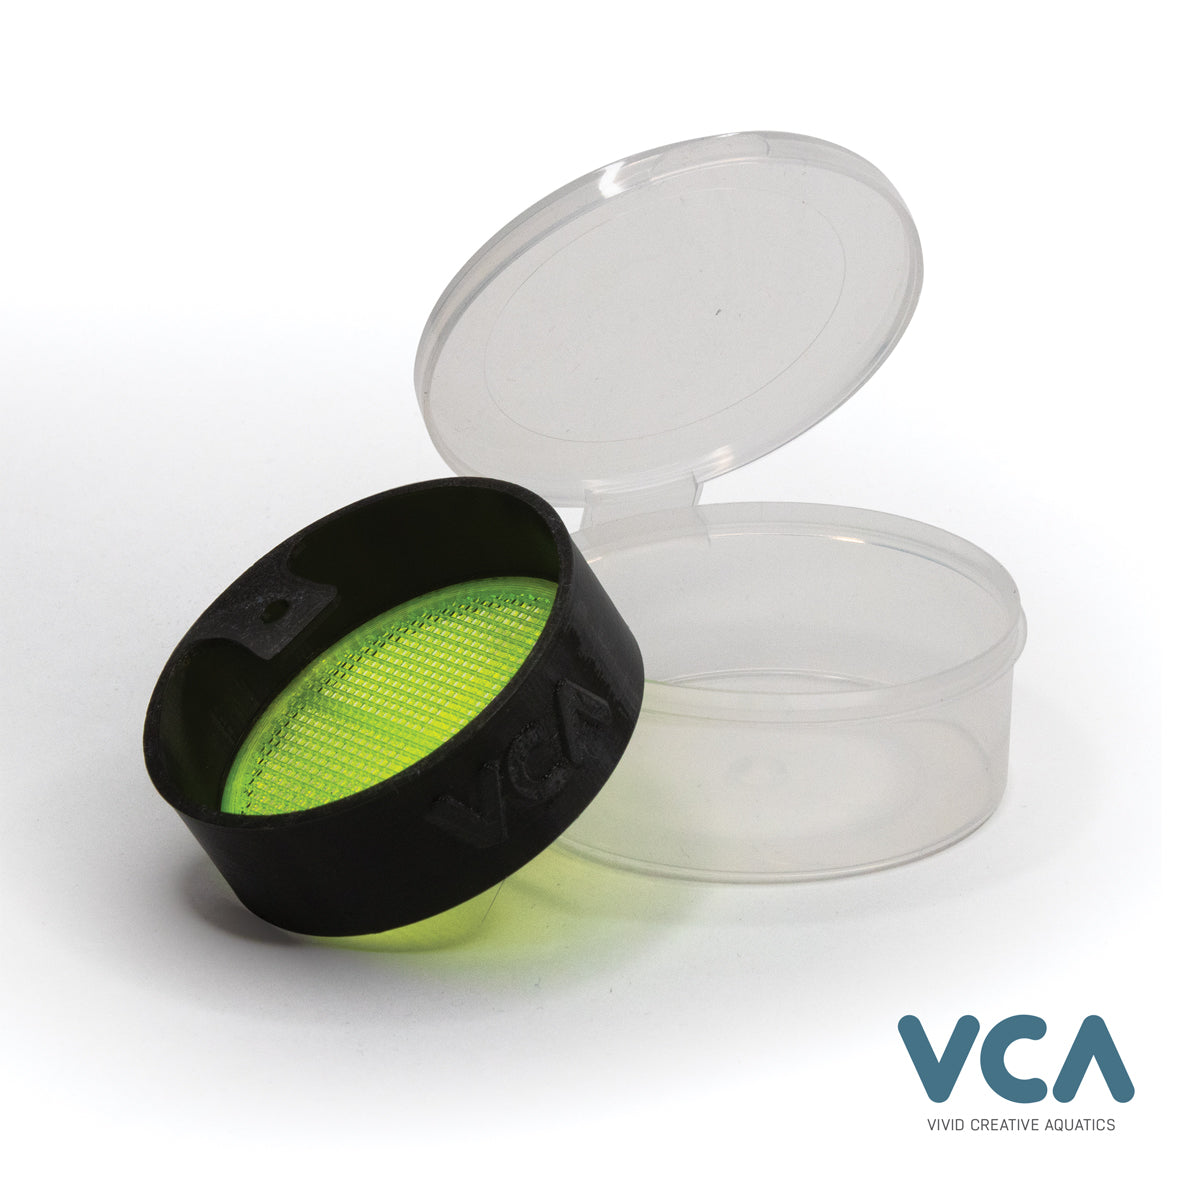 Vivid Creative Aquatics Deluxe Defroster Cups